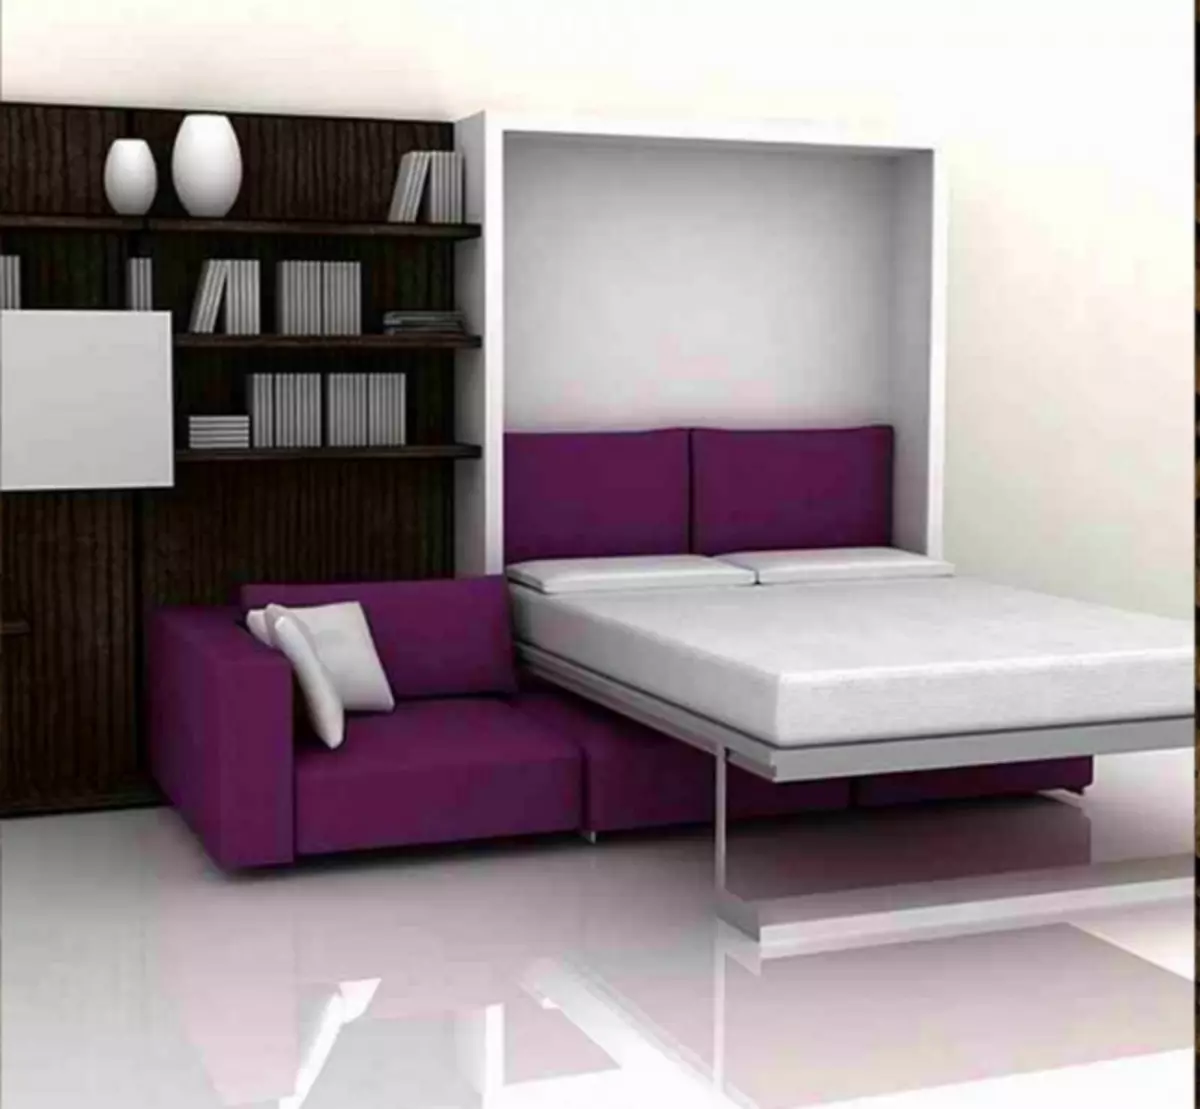 การออกแบบห้องนั่งเล่นห้องนอน: วิธีการรวมมุมพักผ่อนและสถานที่ที่จะนอนหลับ (40 ภาพ)